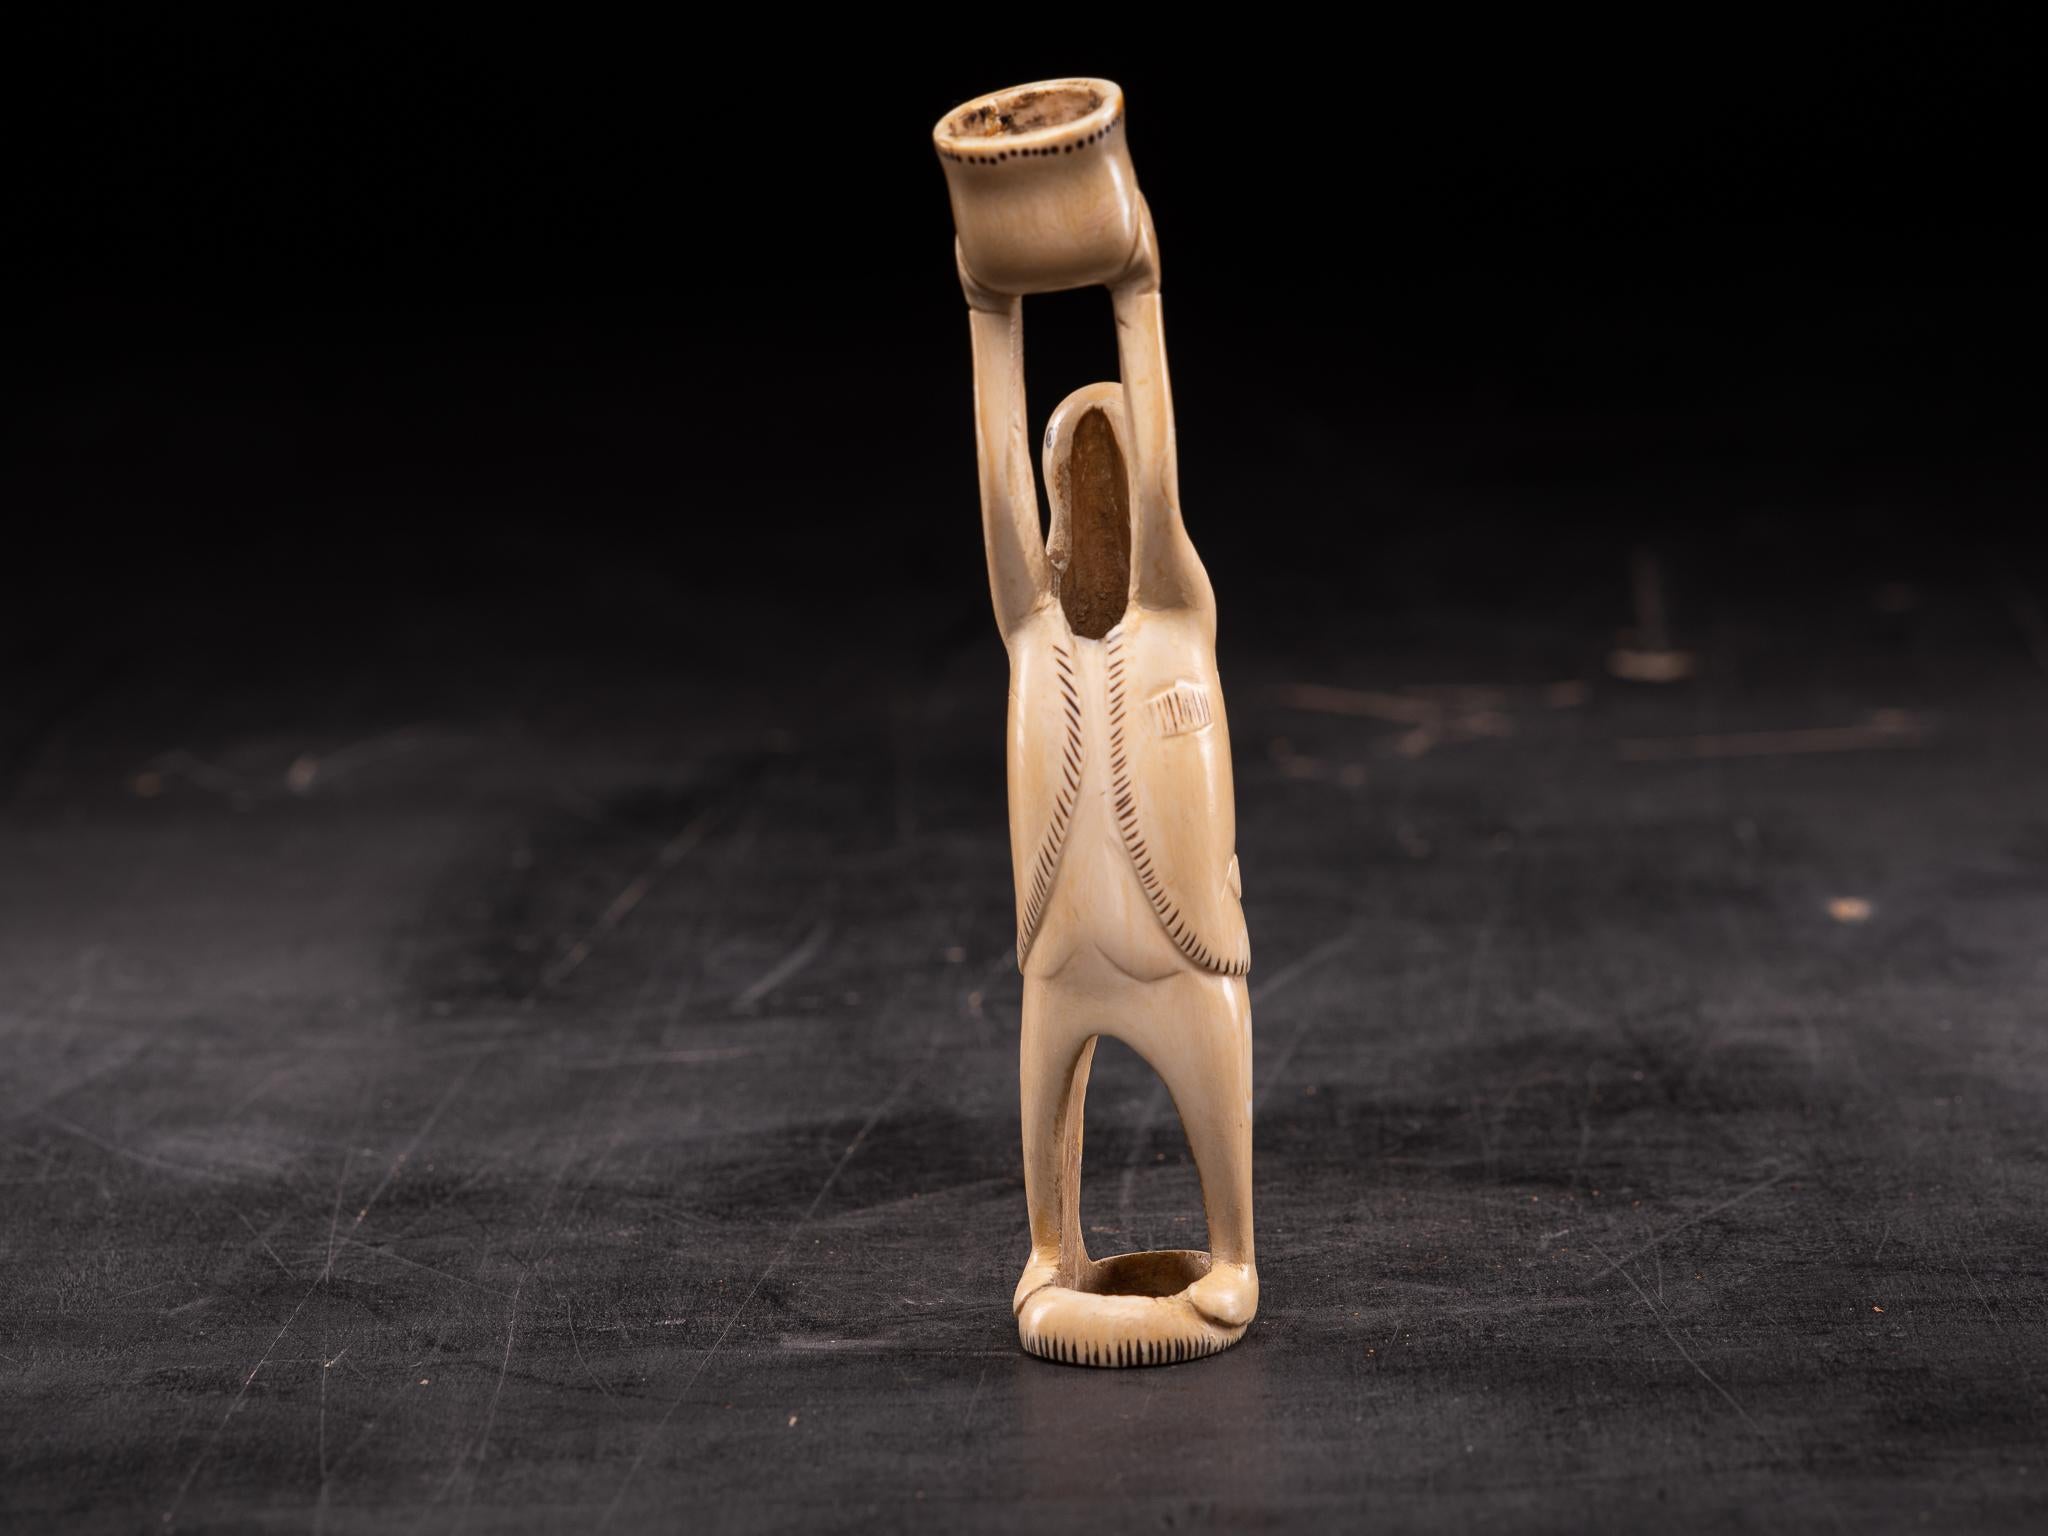 Cette paire est un bel exemple de sculpture sur ivoire réalisée par les Inuits, des Amérindiens qui vivent à l'intérieur et juste en dessous du cercle polaire arctique. Chaque année, ils se procuraient une quantité importante d'ivoire en tuant des